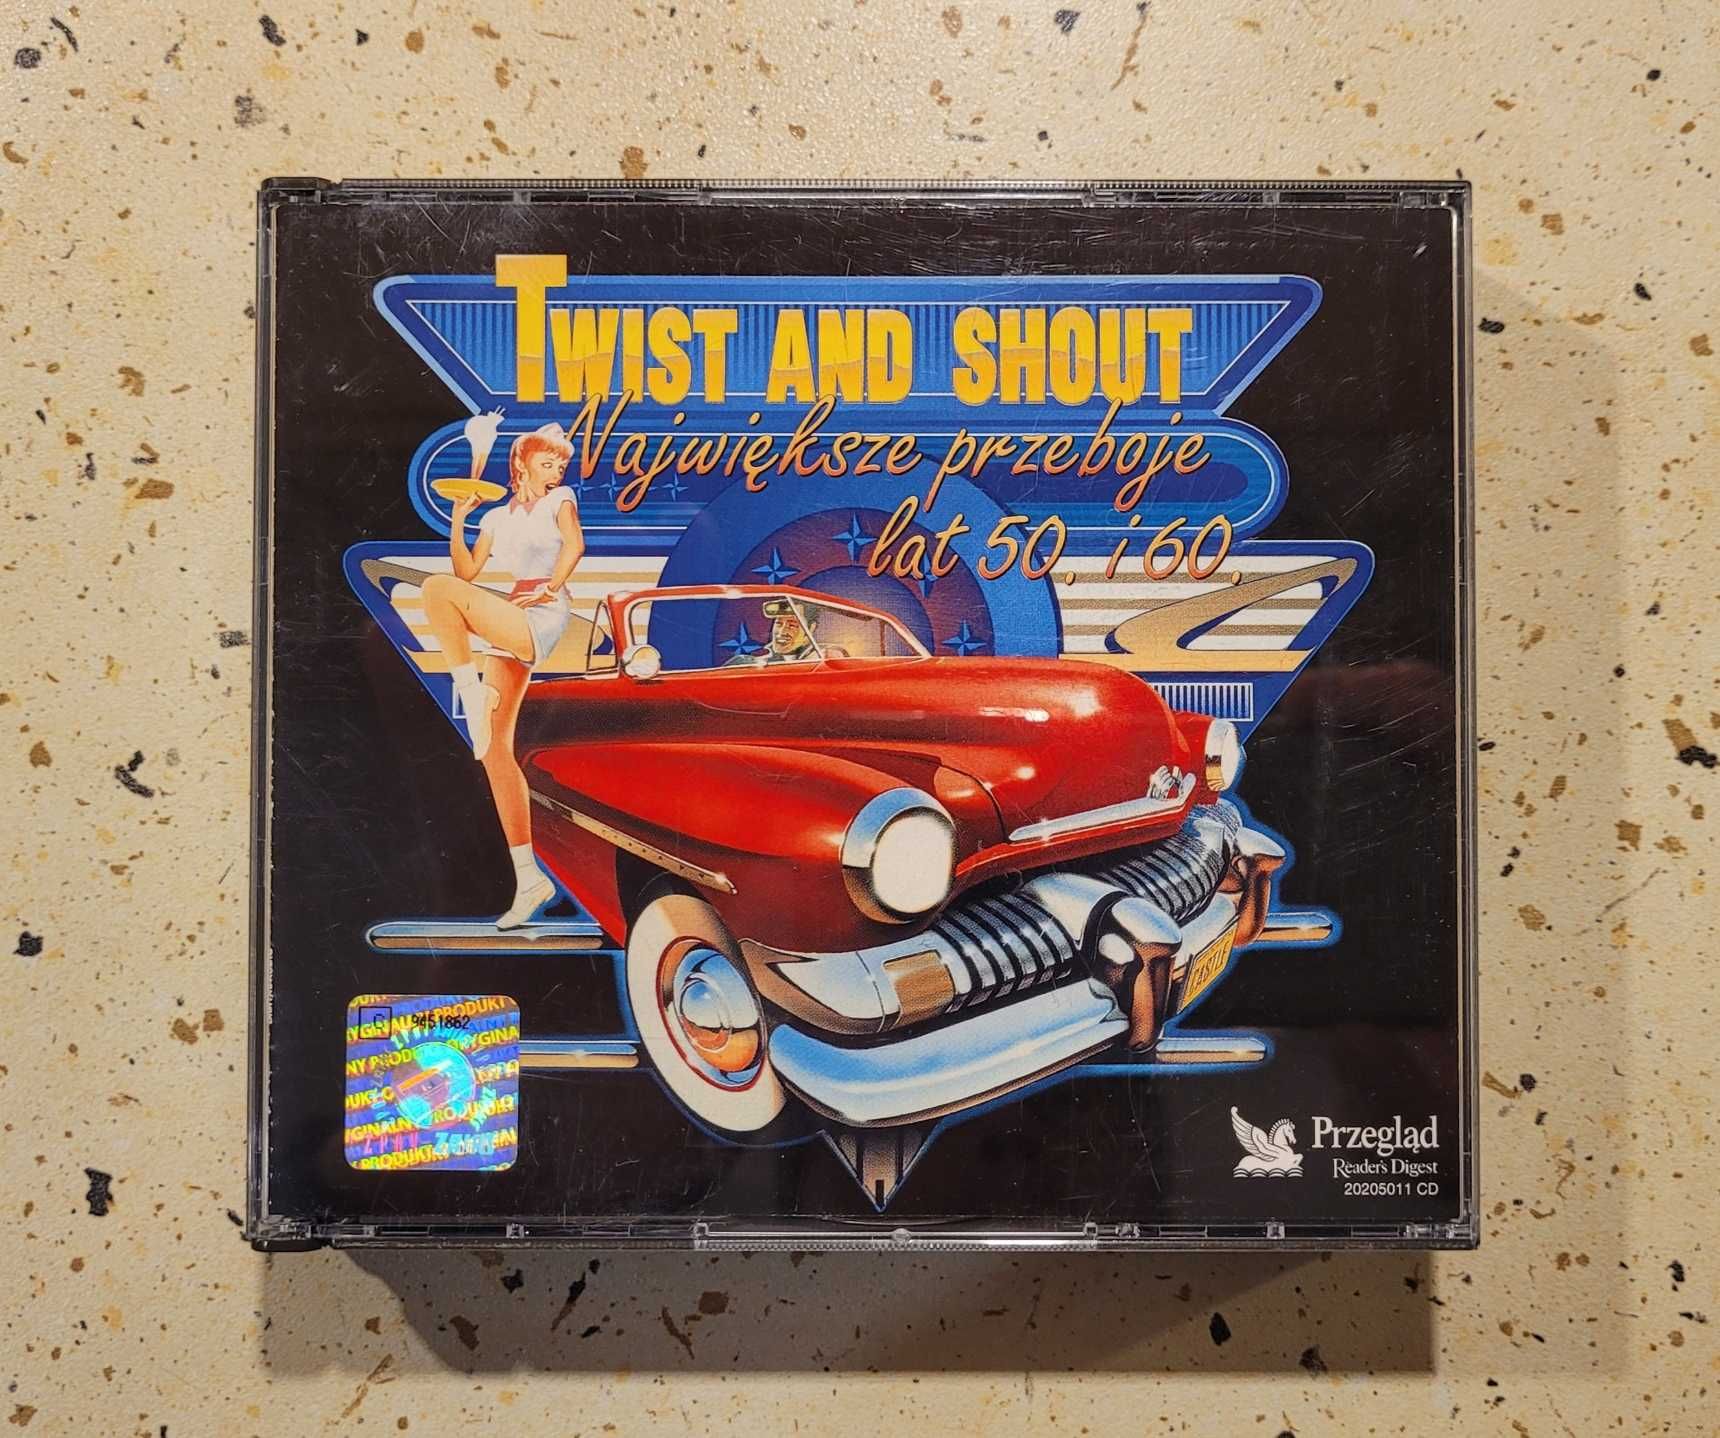 CD "Twistt and shout największe przeboje lat 50. i 60."